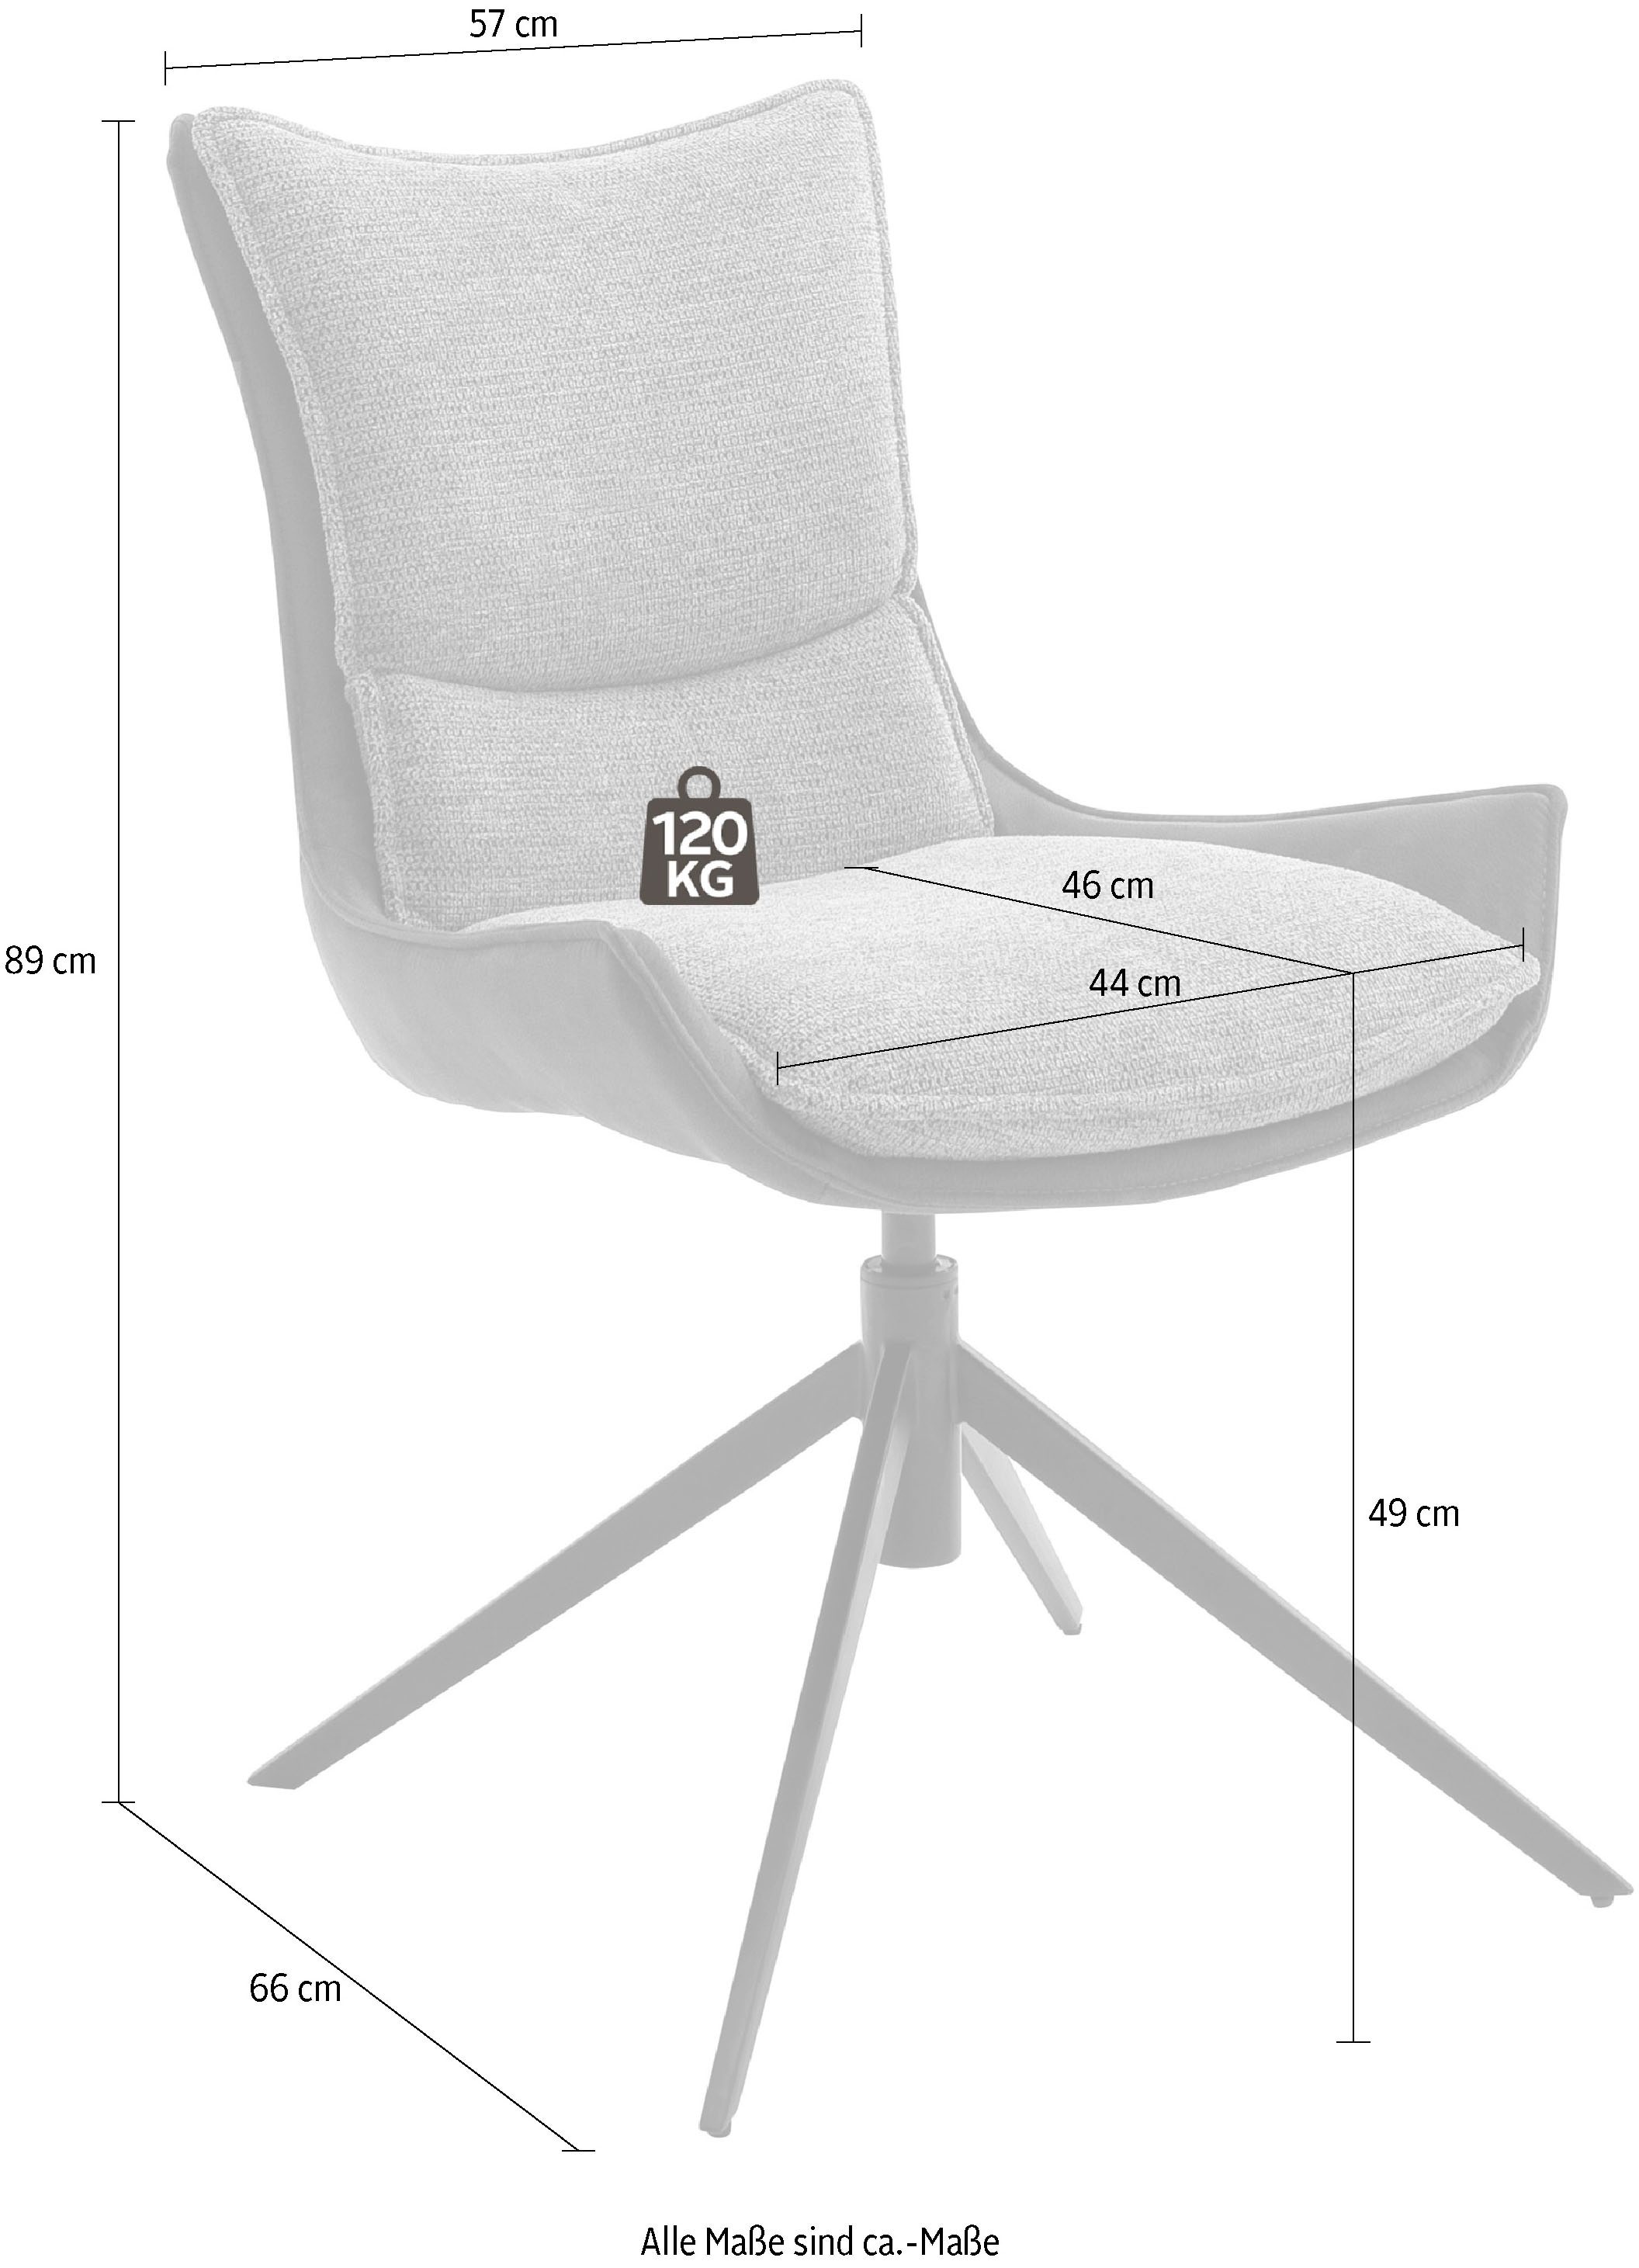 Neue japanische Produkte zu Schnäppchenpreisen MCA furniture 4-Fußstuhl Esszimmerstuhl bestellen (Set), bis 2 St., Nivellierung, Stoffbezug, drehbar 120 »Kitami«, mit | kg BAUR 360°